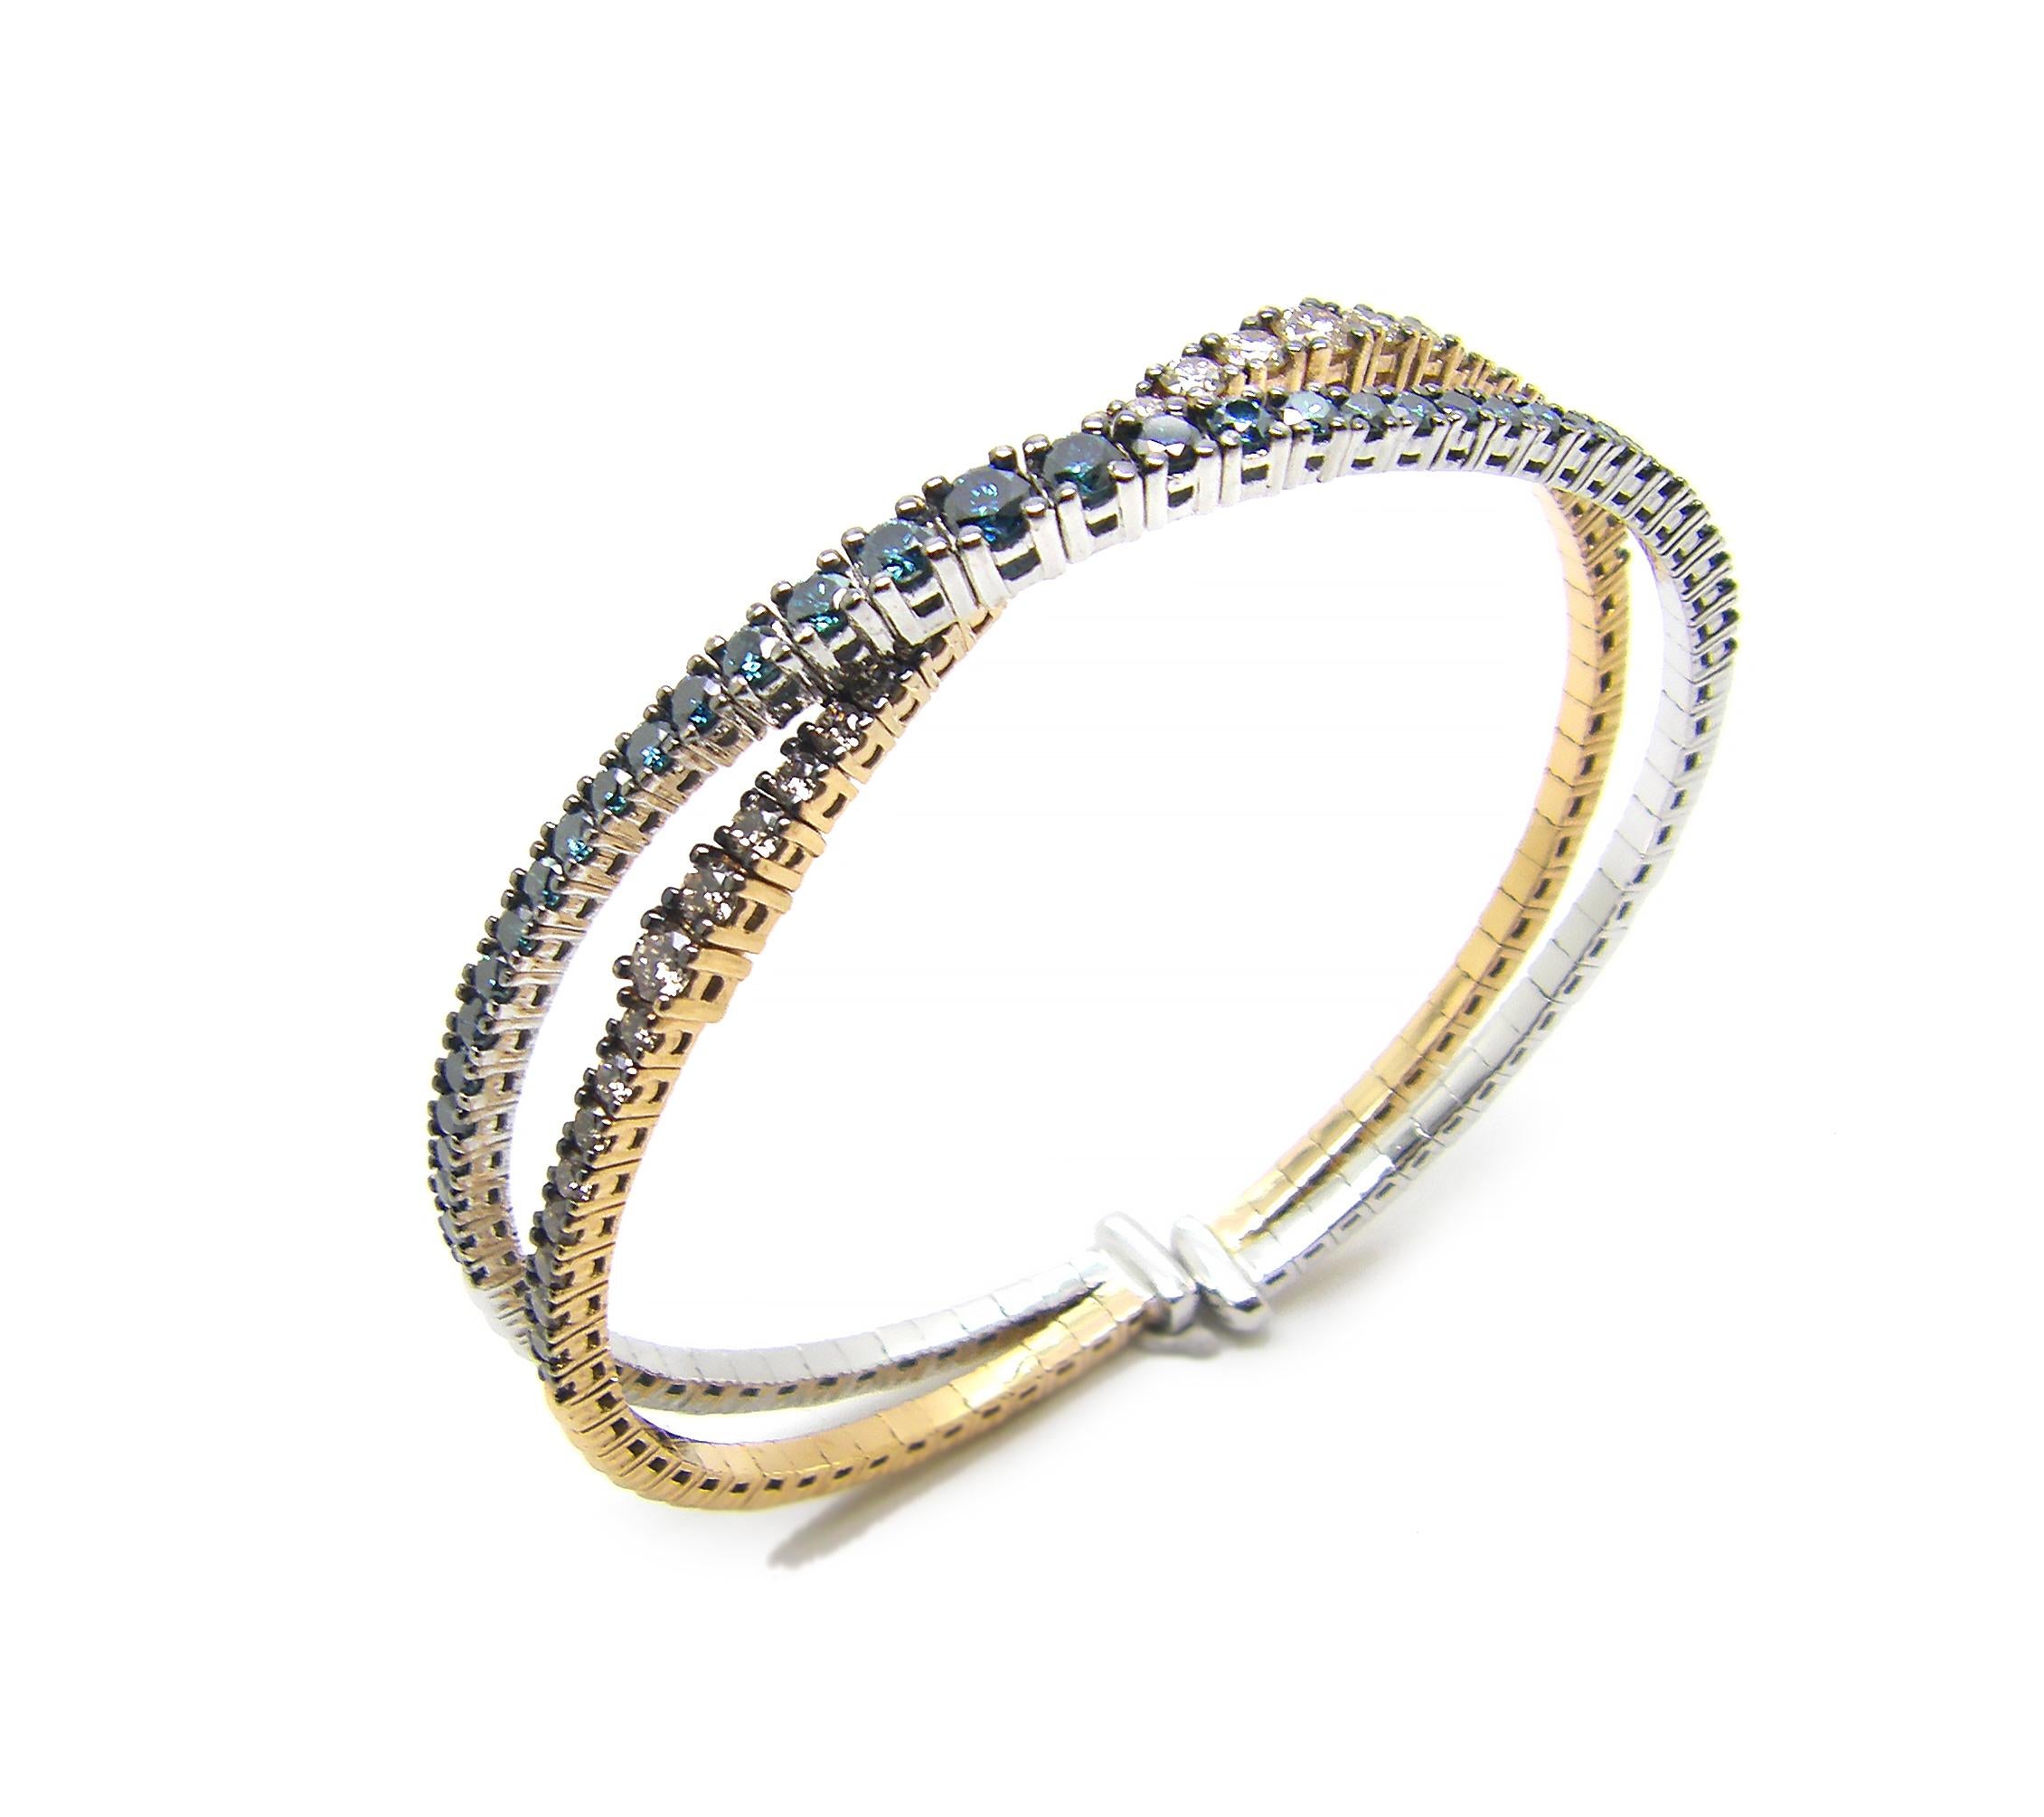 S.Georgios zweifarbiges Designer-Armband aus 18-karätigem Weiß- und Roségold mit braunen und blauen Diamanten, die mikroskopisch gefasst sind. Dieses wunderschöne Armband ist eine Sonderanfertigung und hat braune Diamanten im Brillantschliff mit